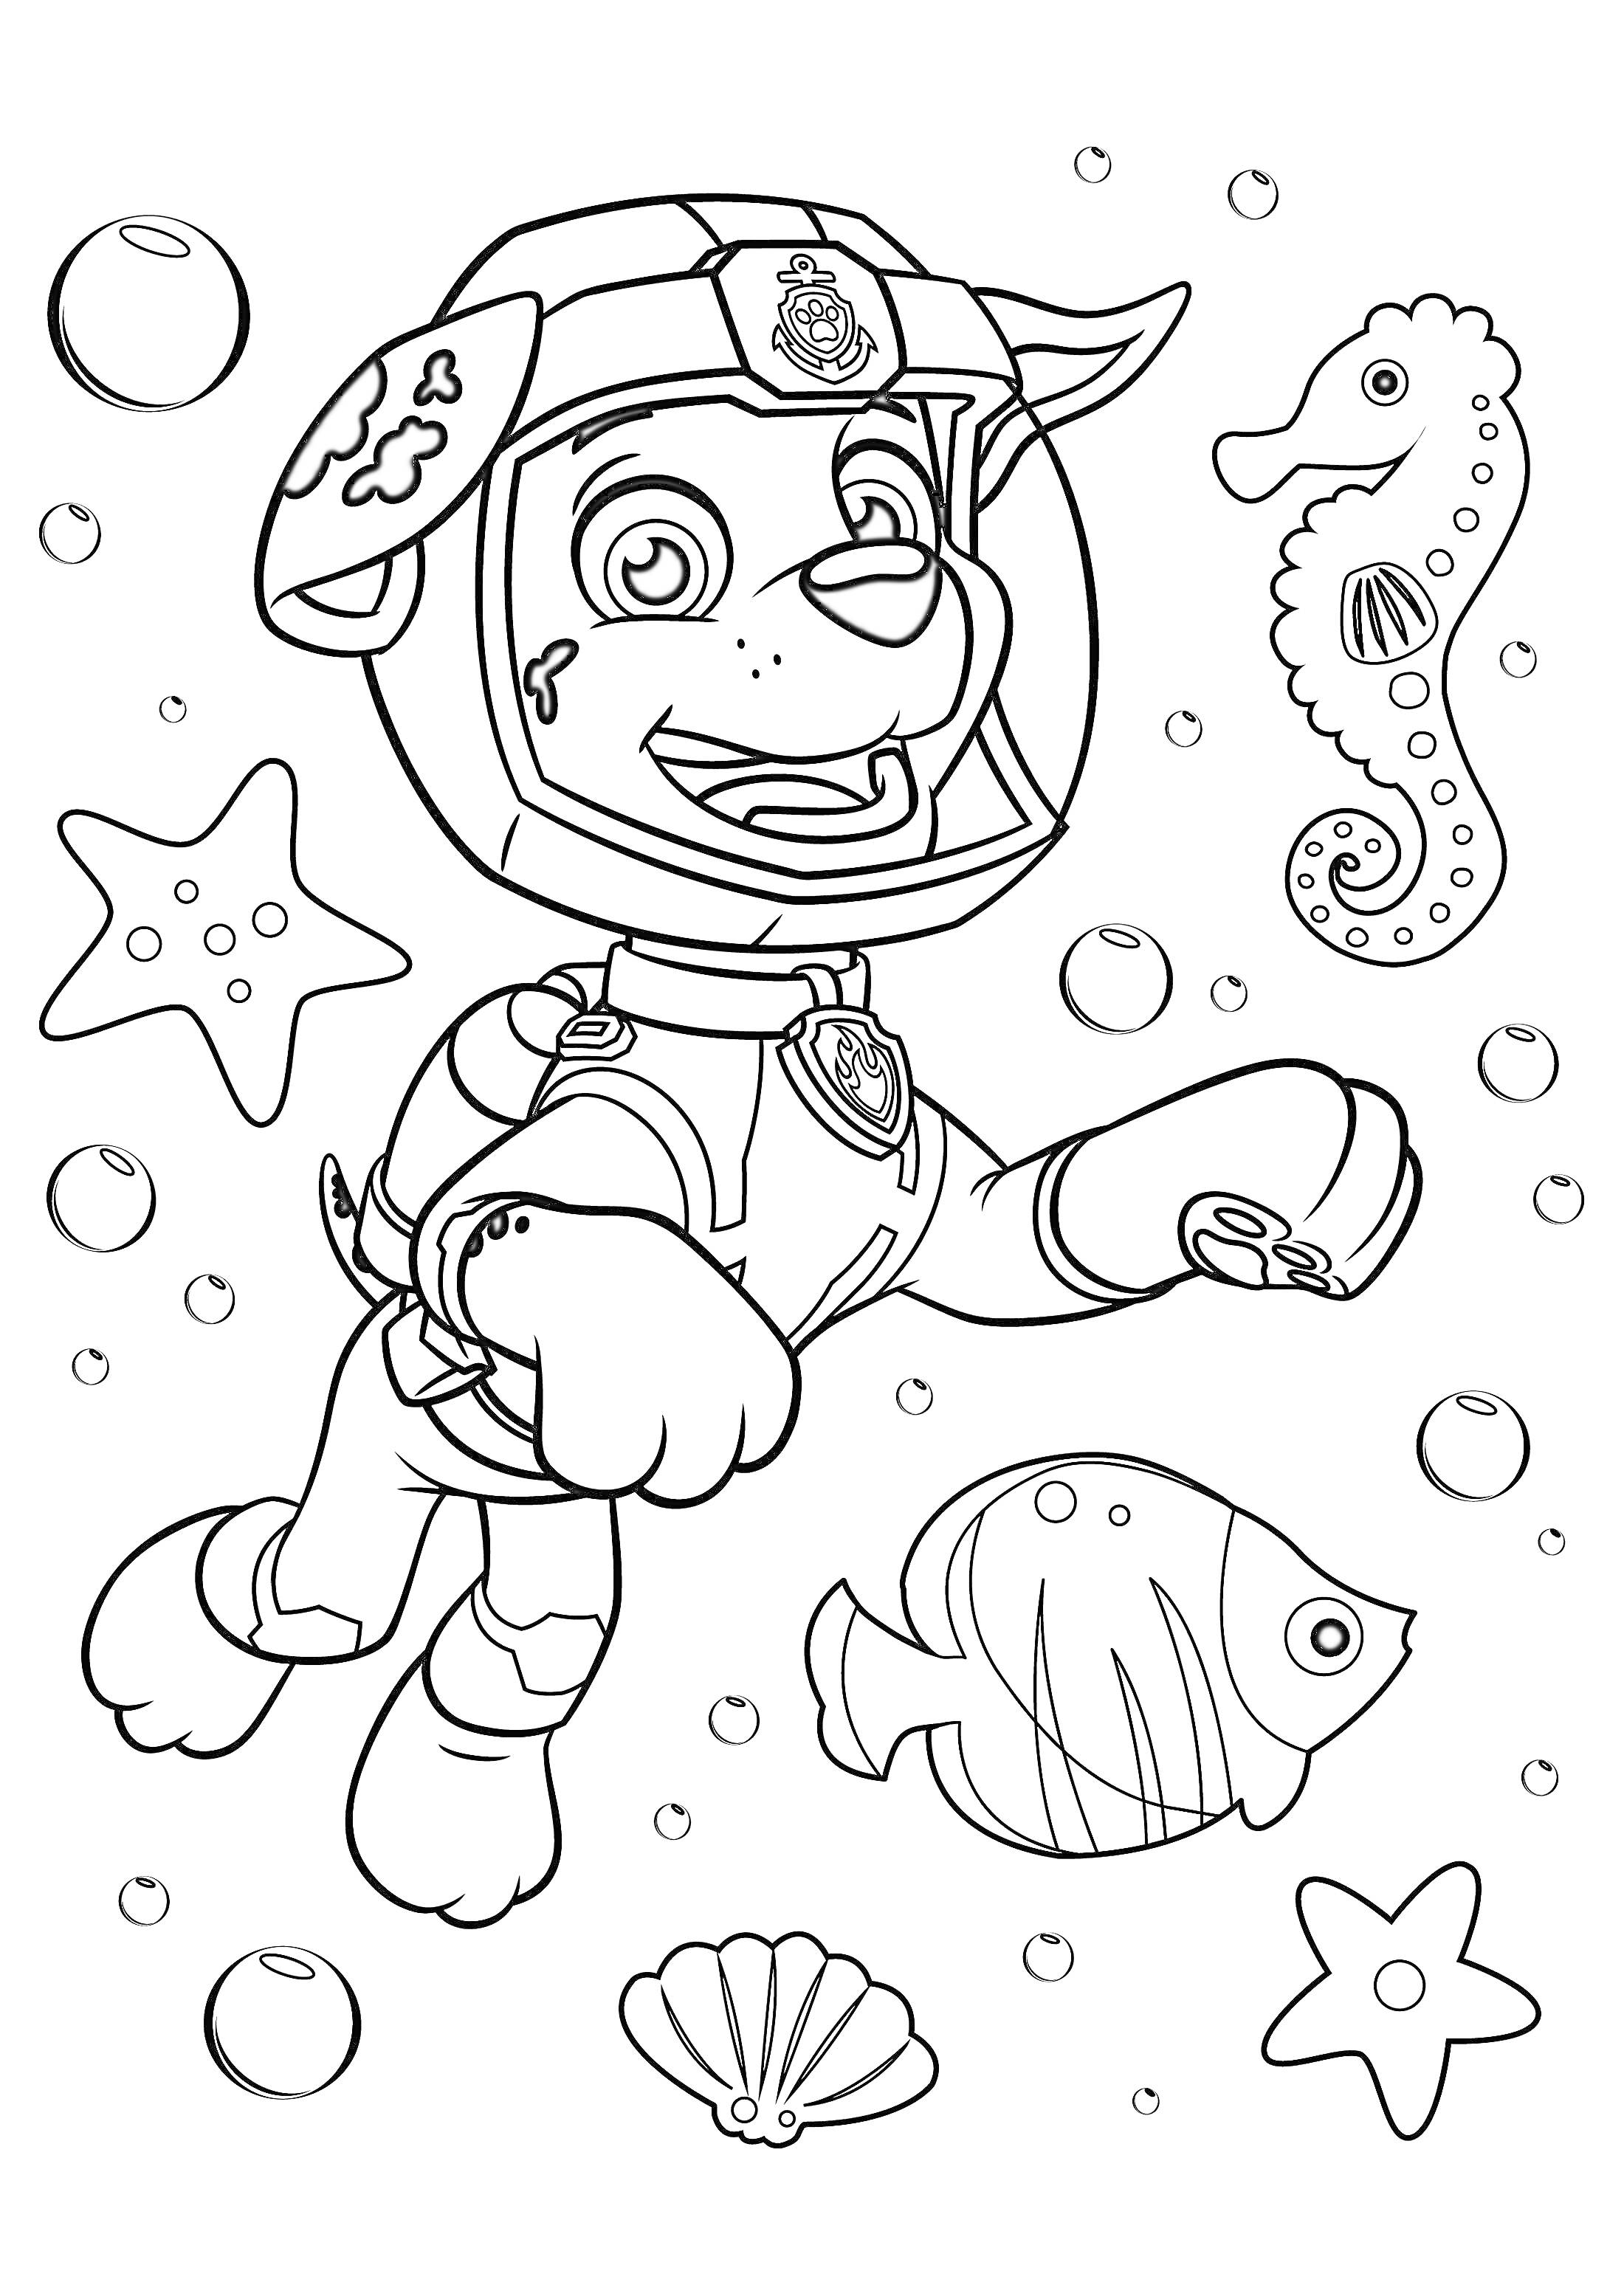 Раскраска Щенячий Патруль под водой: щенок в шлеме, морская звезда, рыба, морской конек, пузырьки, ракушка